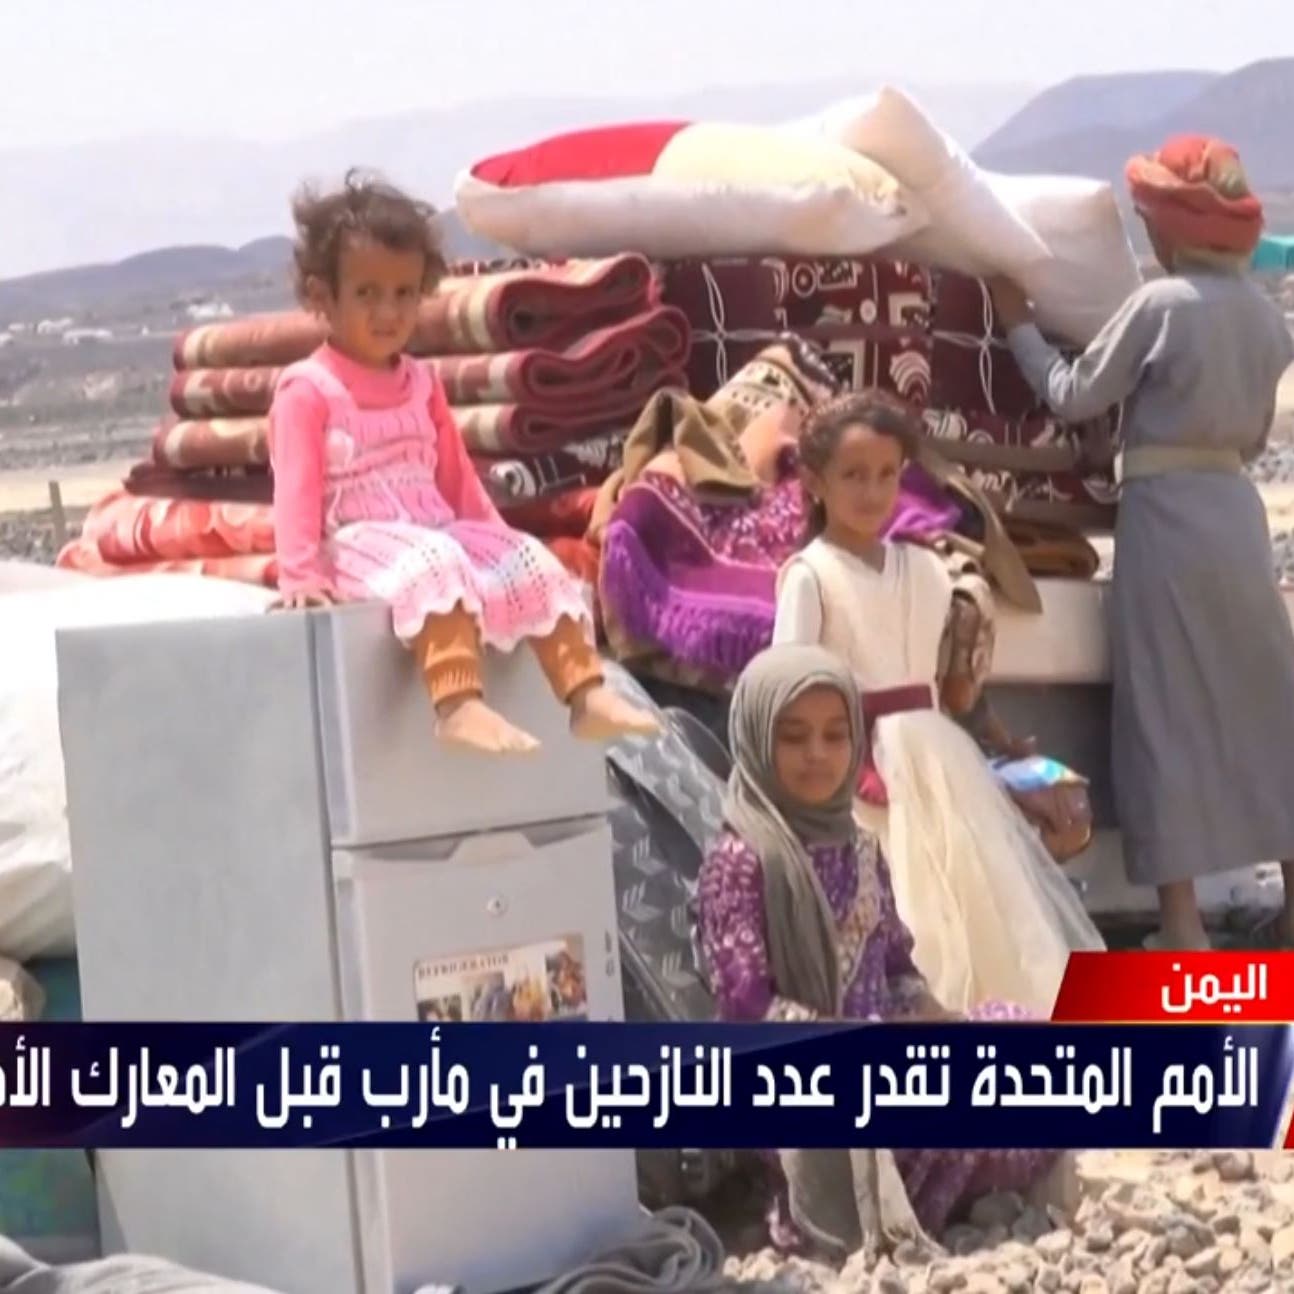 نازح يمني فرّ من بطش ميليشيات الحوثي يروي معاناته مع أبنائه السبعة وزوجته